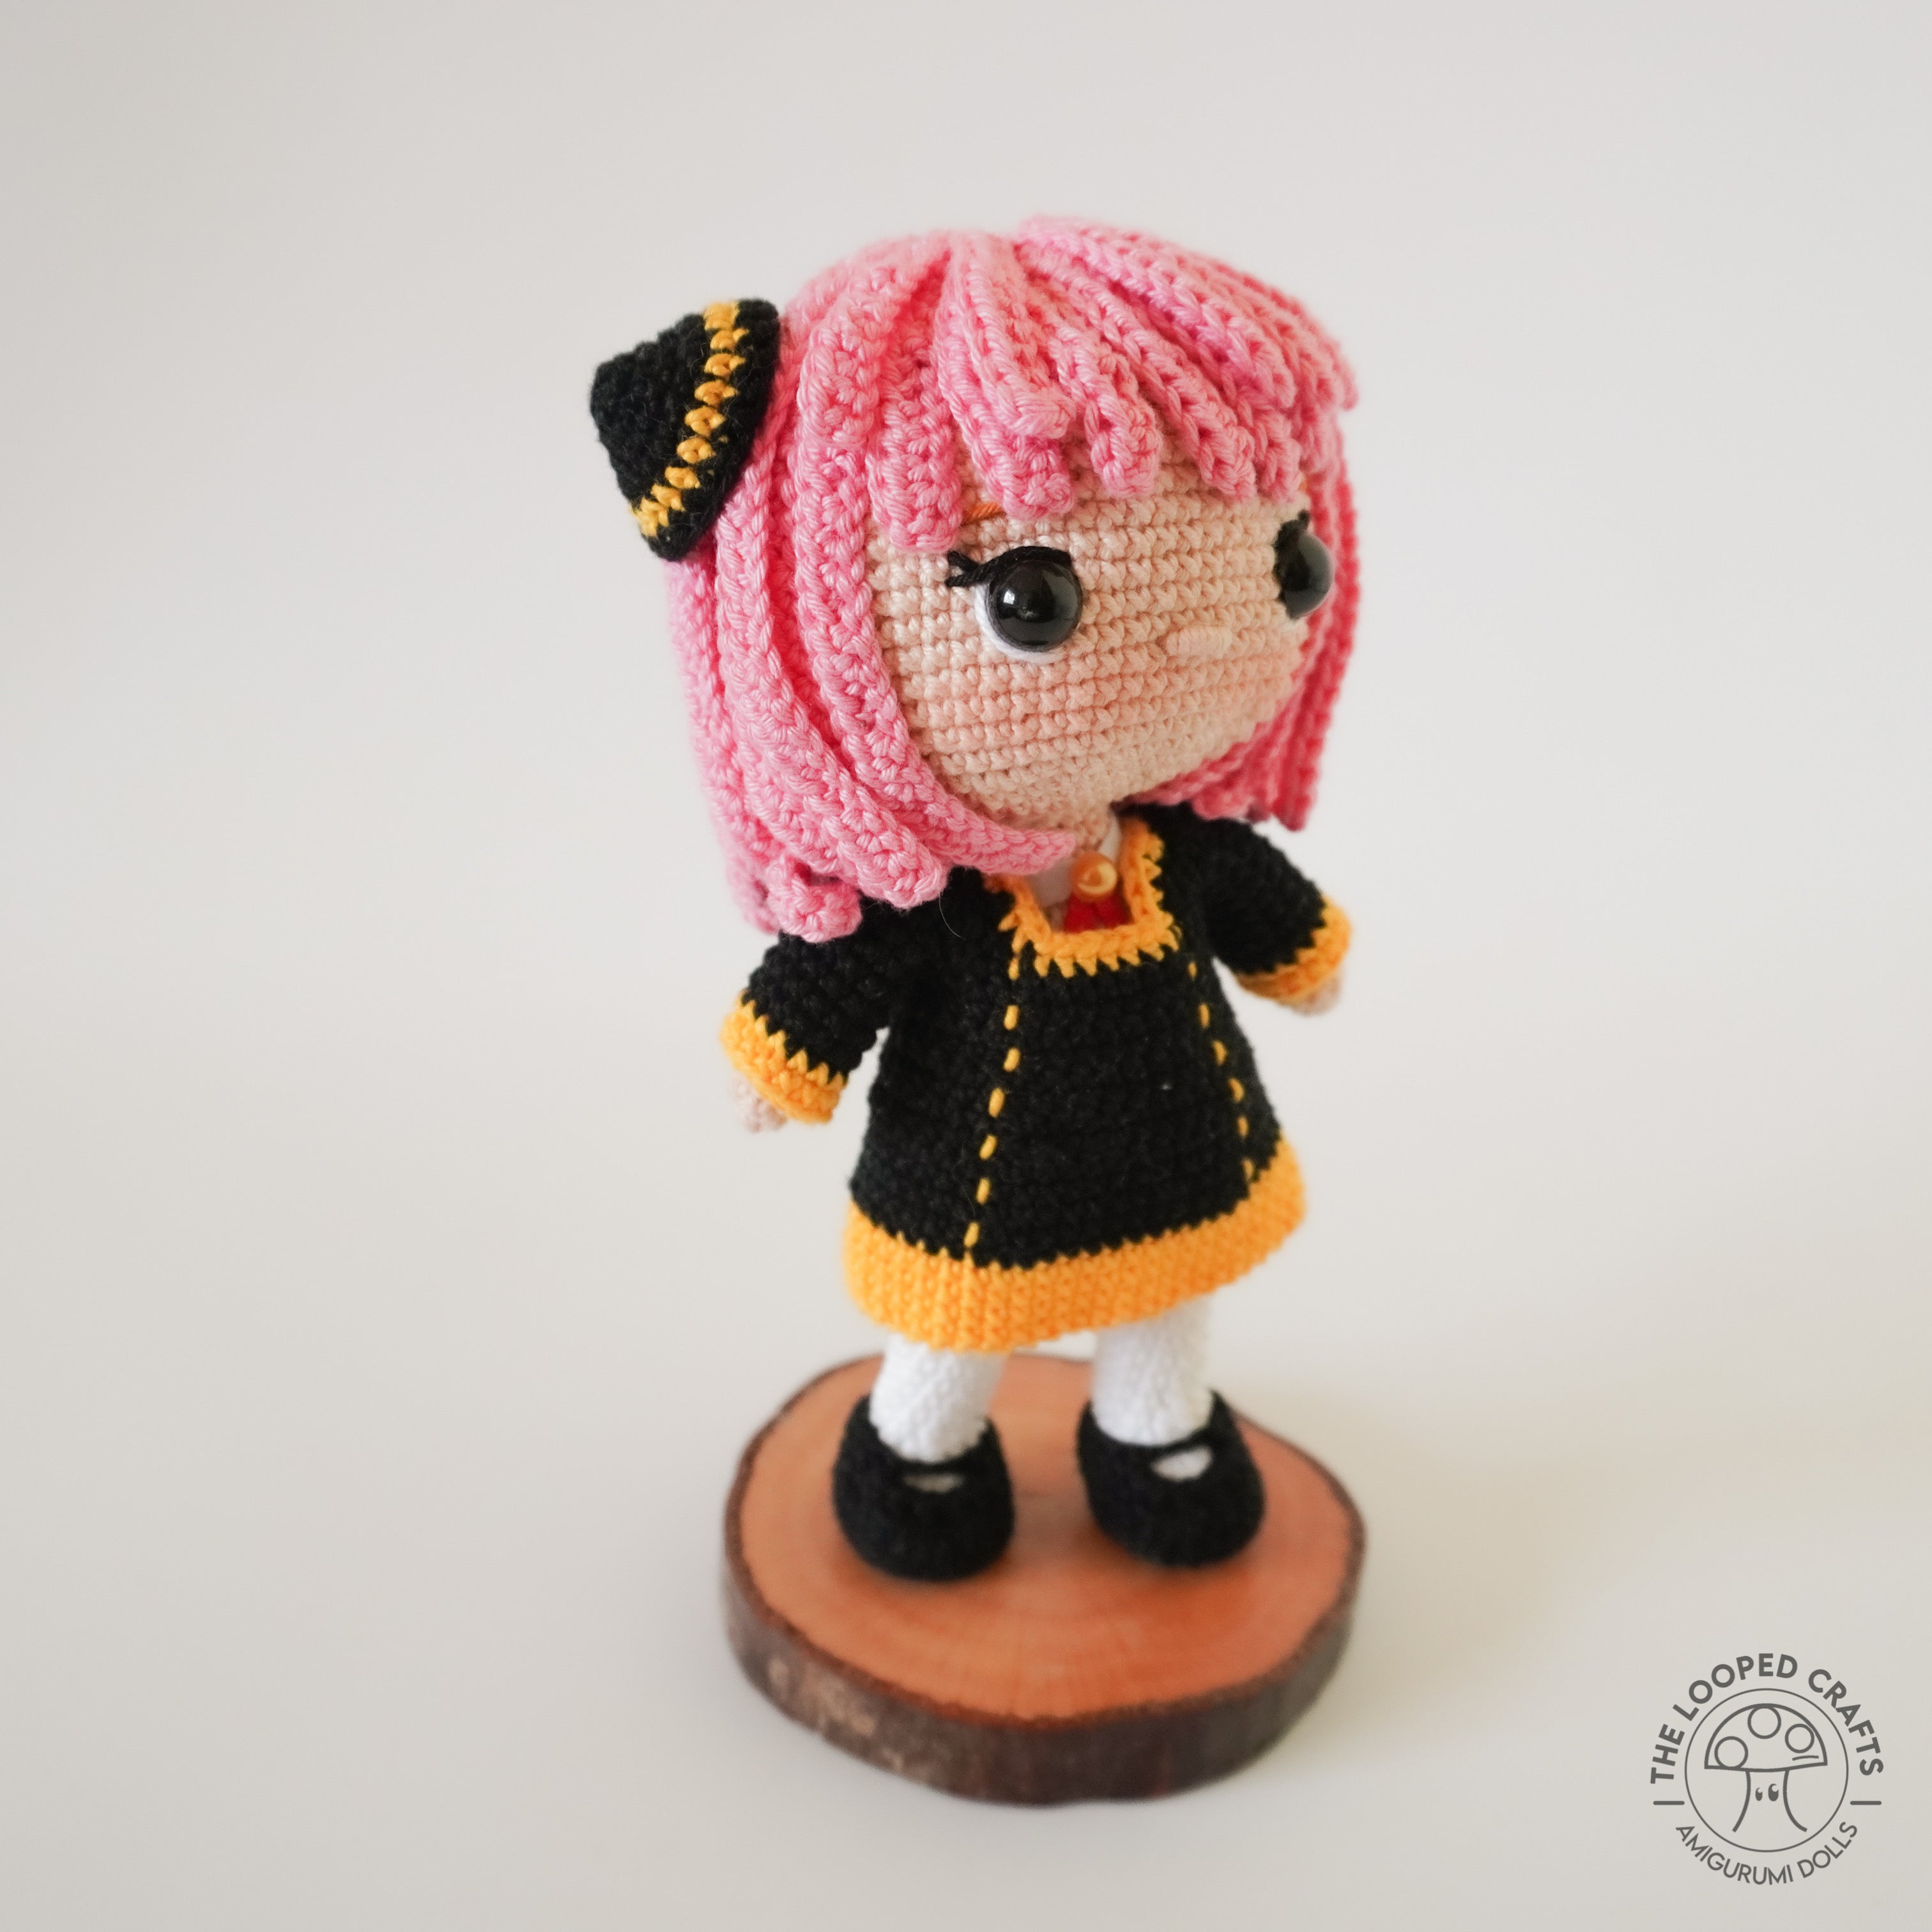 Little Sis Slouchy Hat - Crochet Pattern ~ Crafty Kitty Crochet